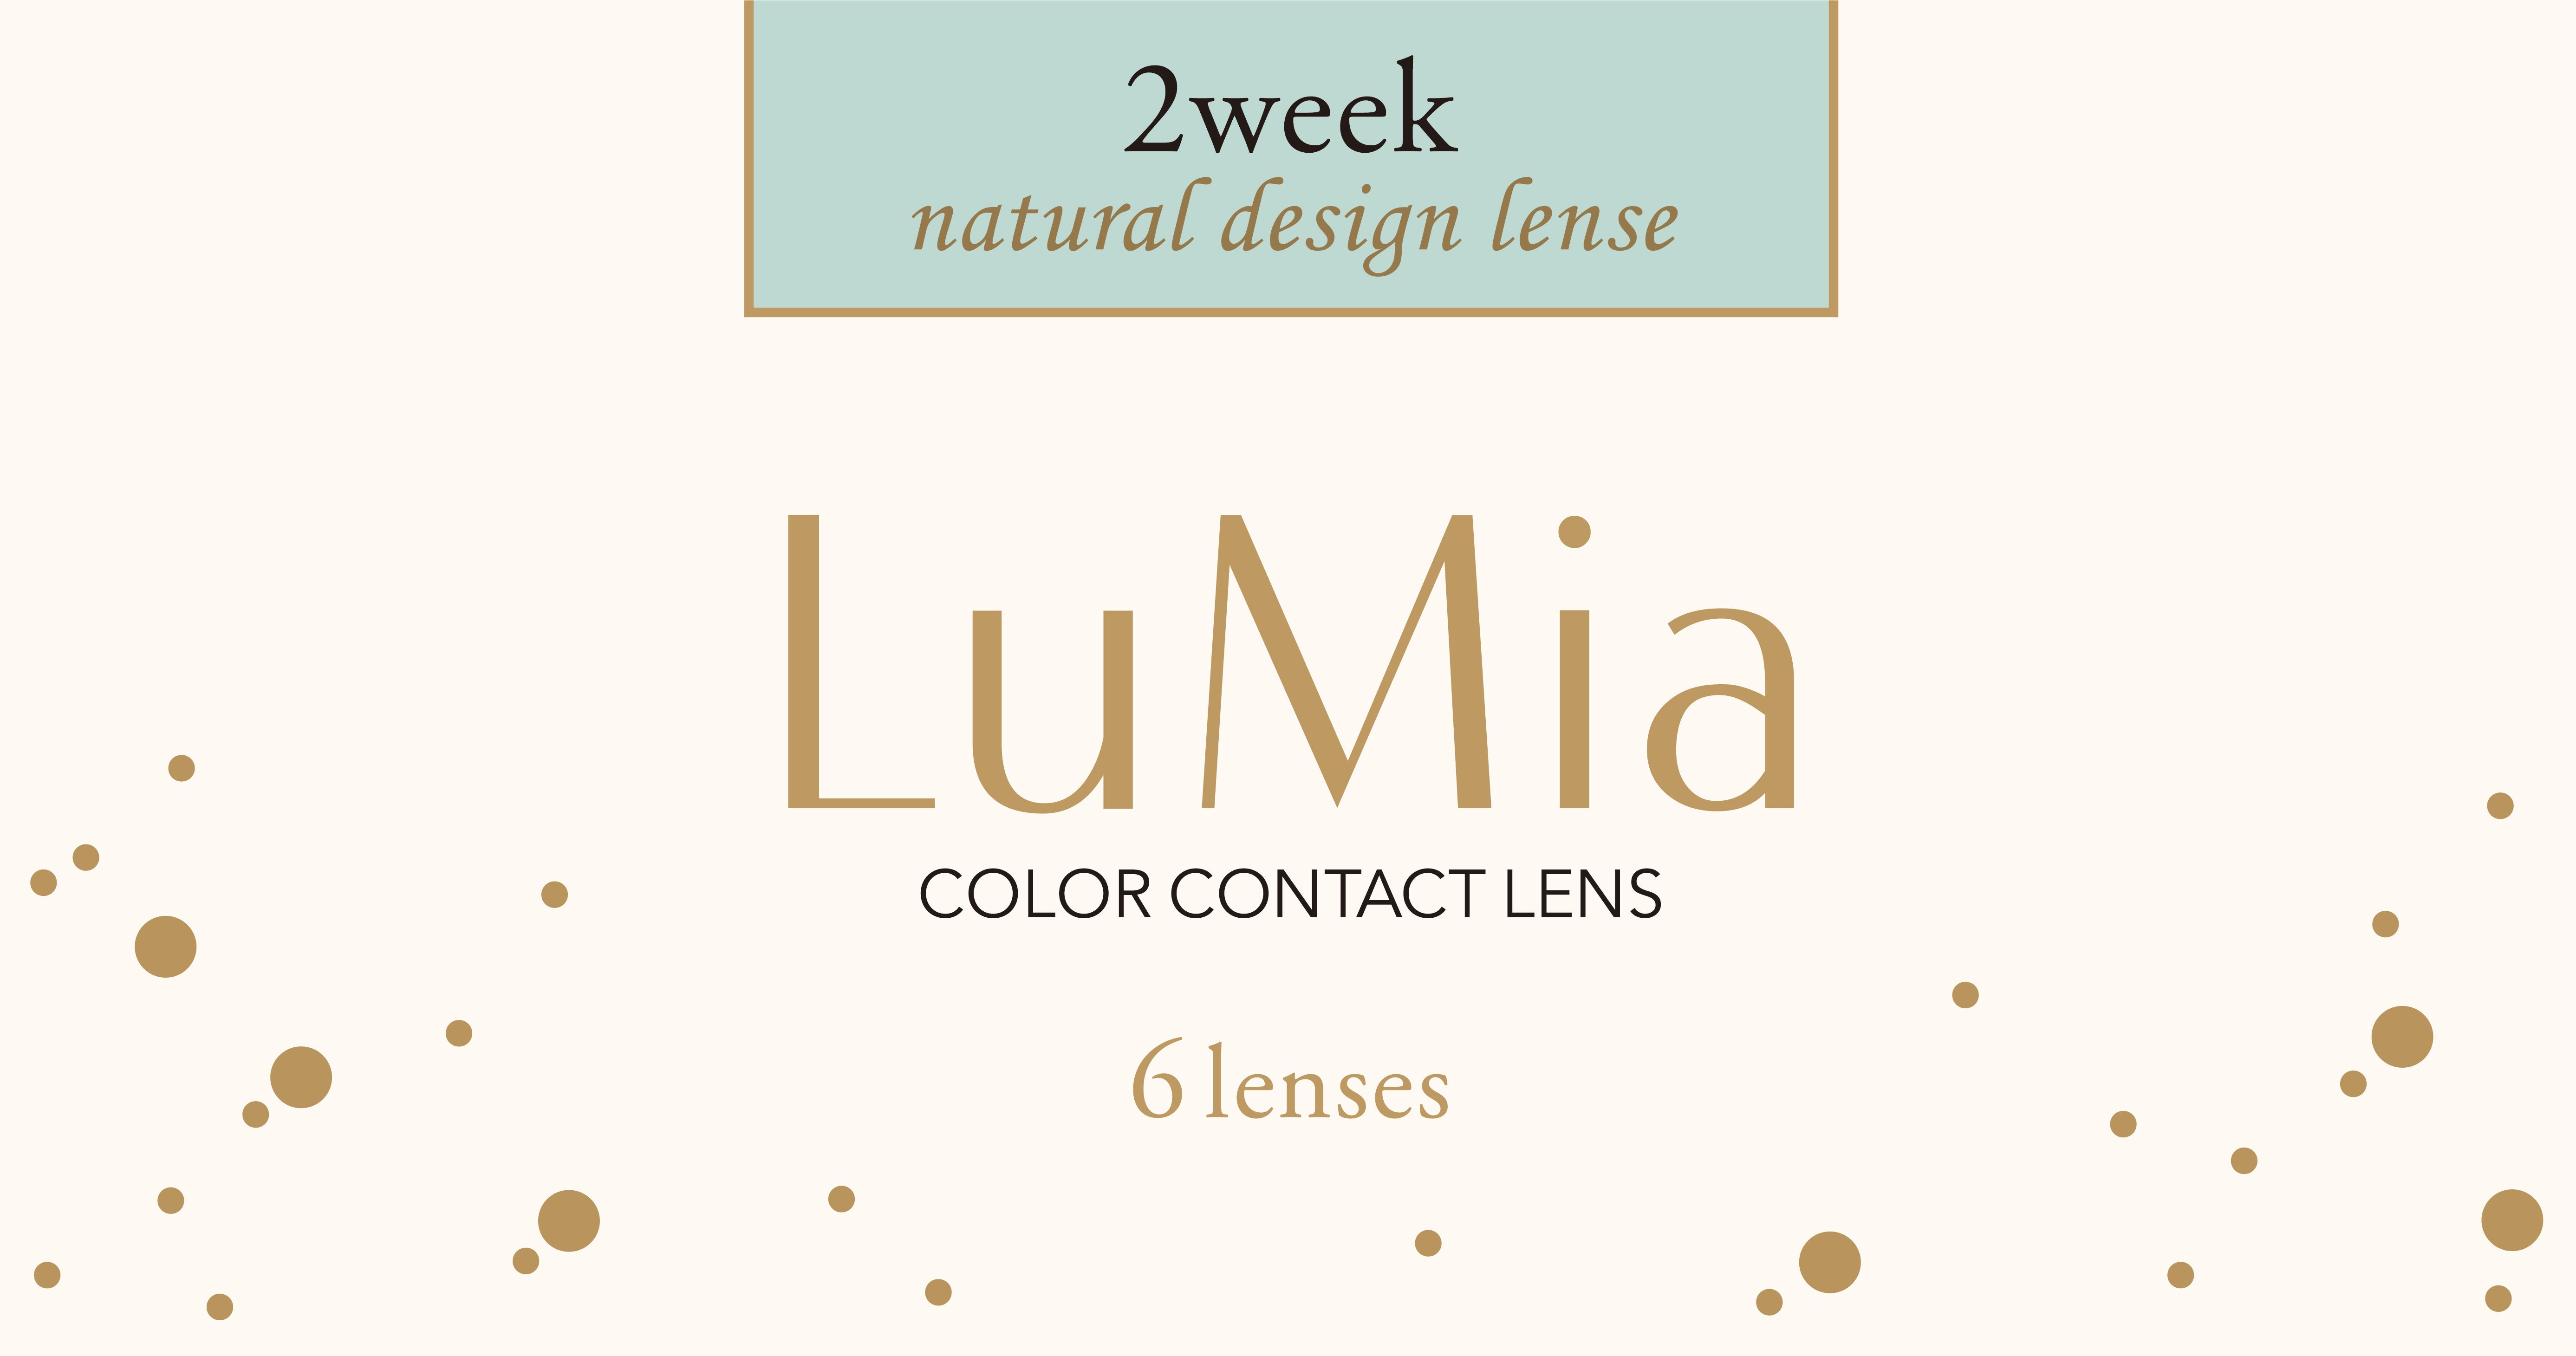 カラーコンタクトレンズ、LuMia ブルネットオリーブ UV | 2weekの追加の参考画像4枚目